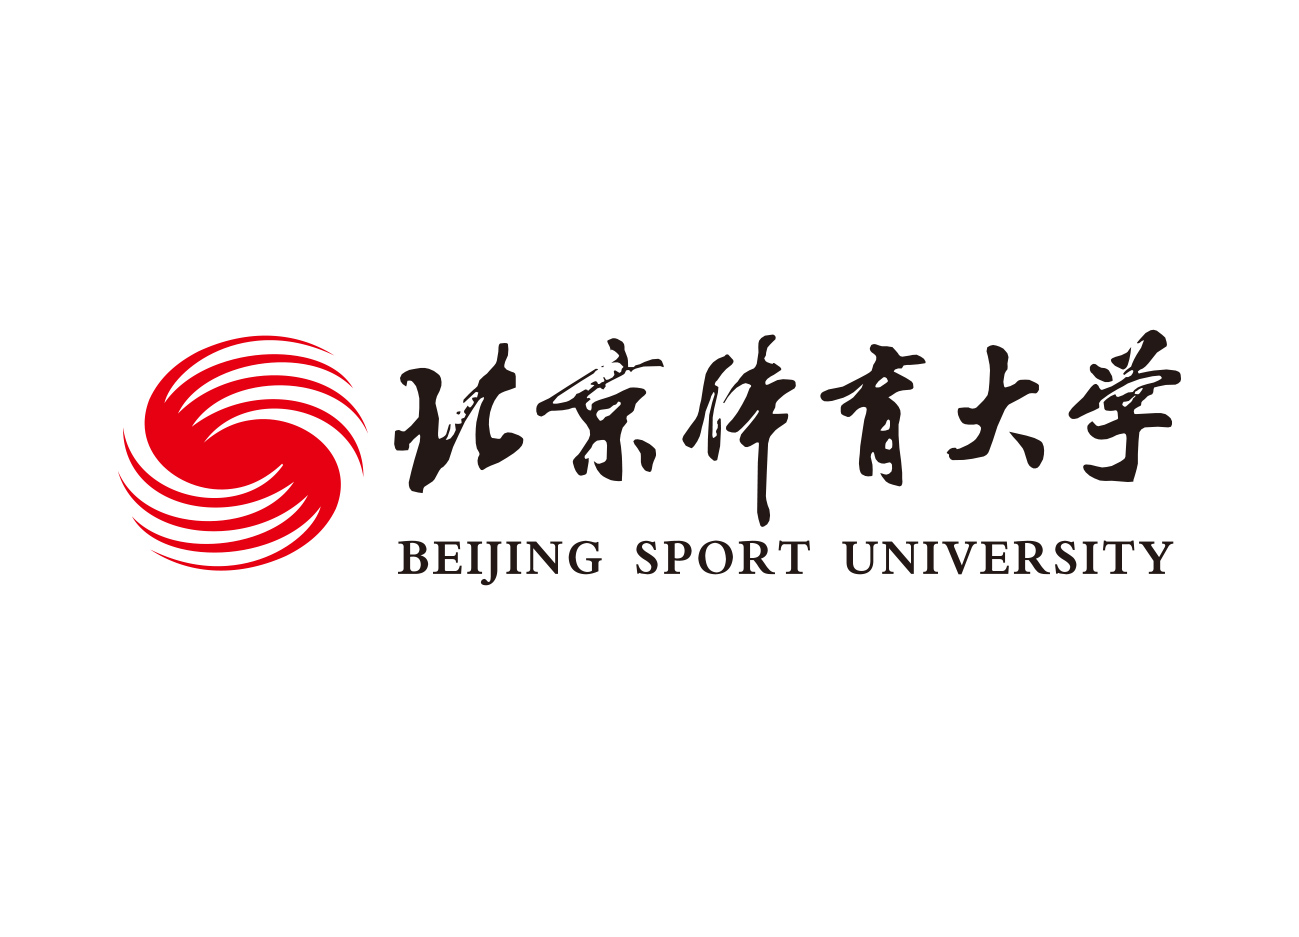 大学校徽系列: 北京体育大学标志矢量图